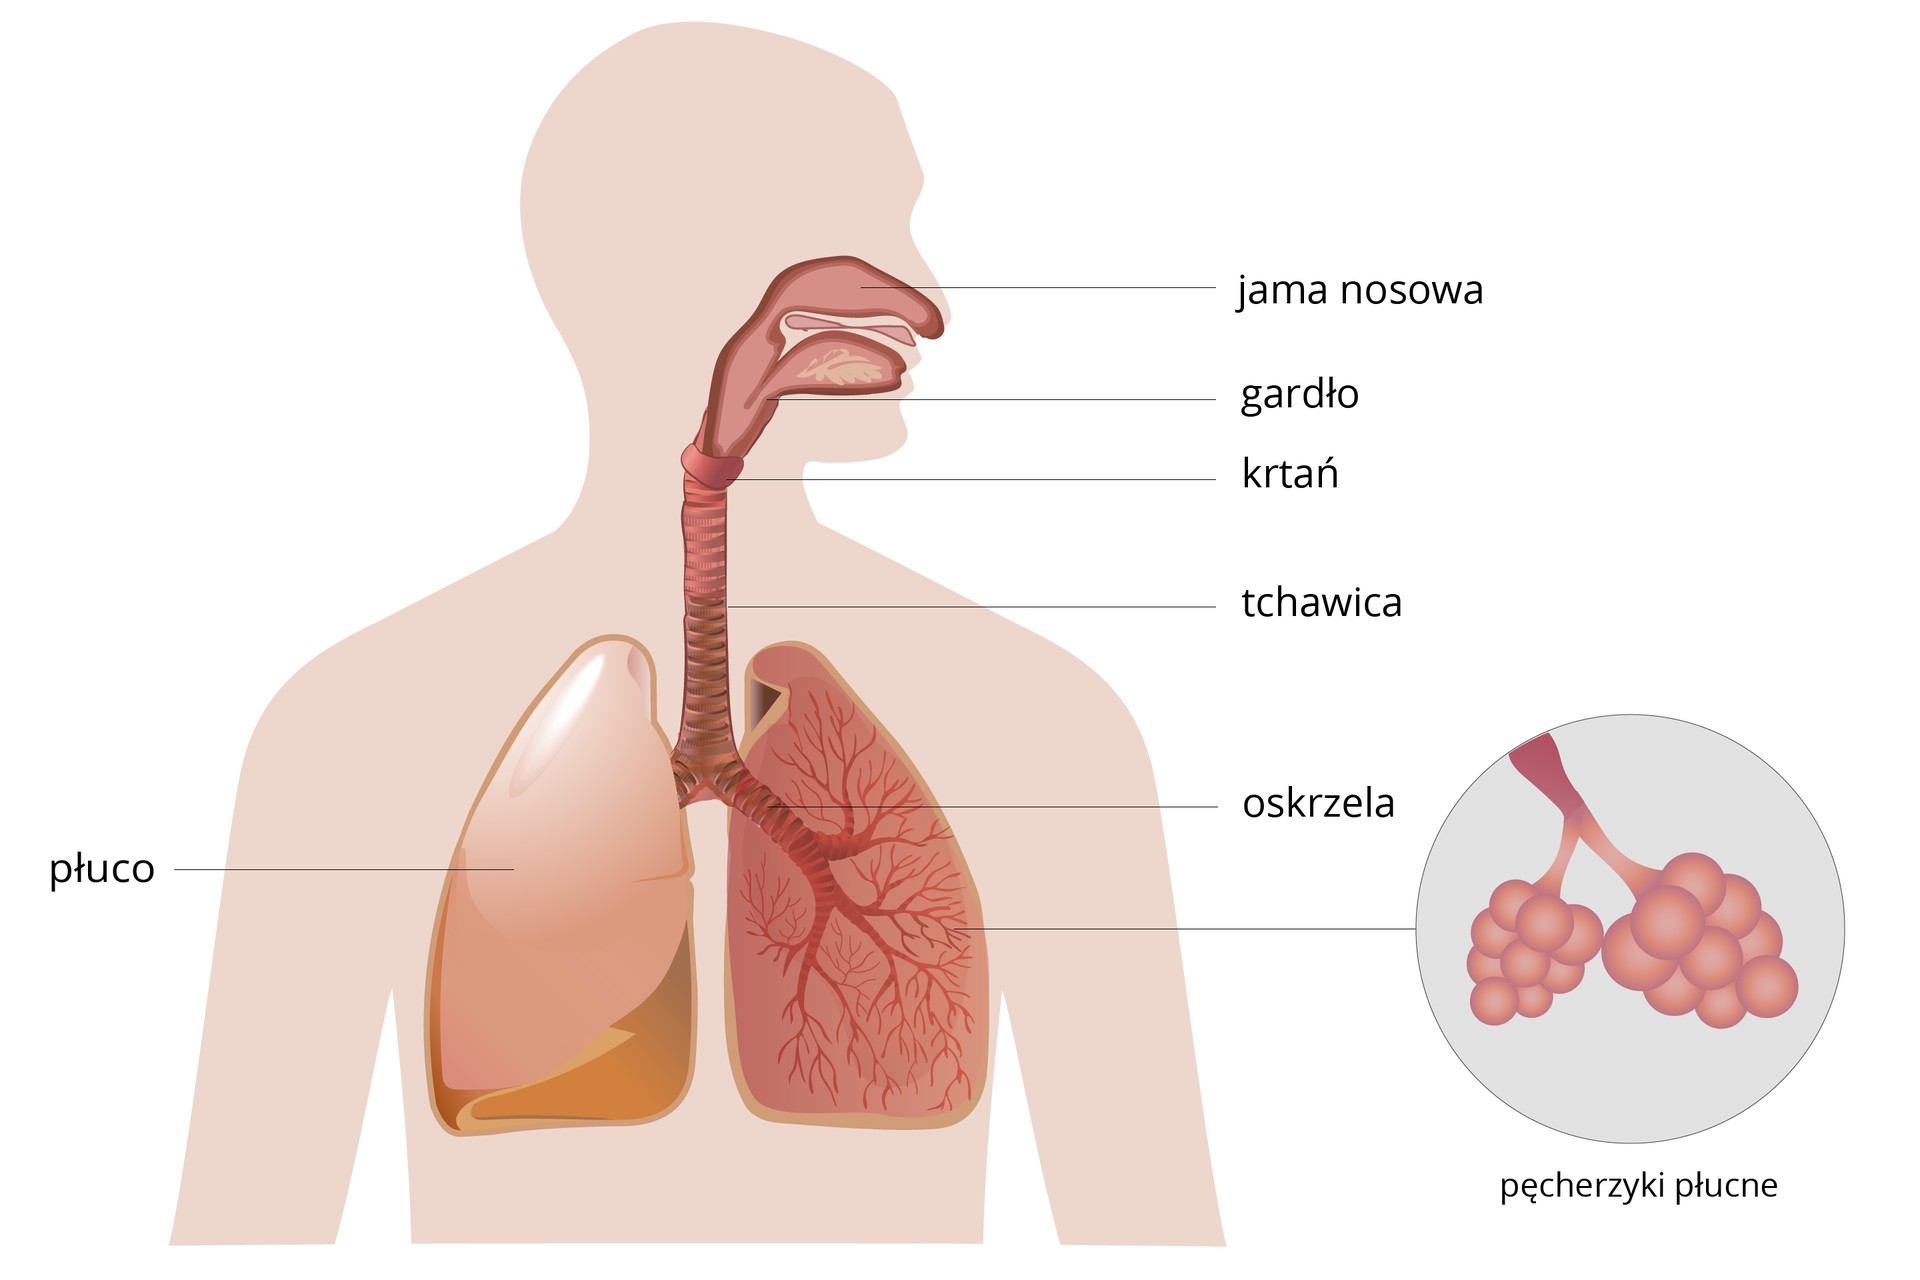 Schemat, przedstawiający budowę układu oddechowego człowieka z opisem narządów: jama nosowa, gardło, krtań, tchawica, oskrzela oraz płuco. W prawej dolnej części schematu przybliżenie pęcherzyków płucnych.